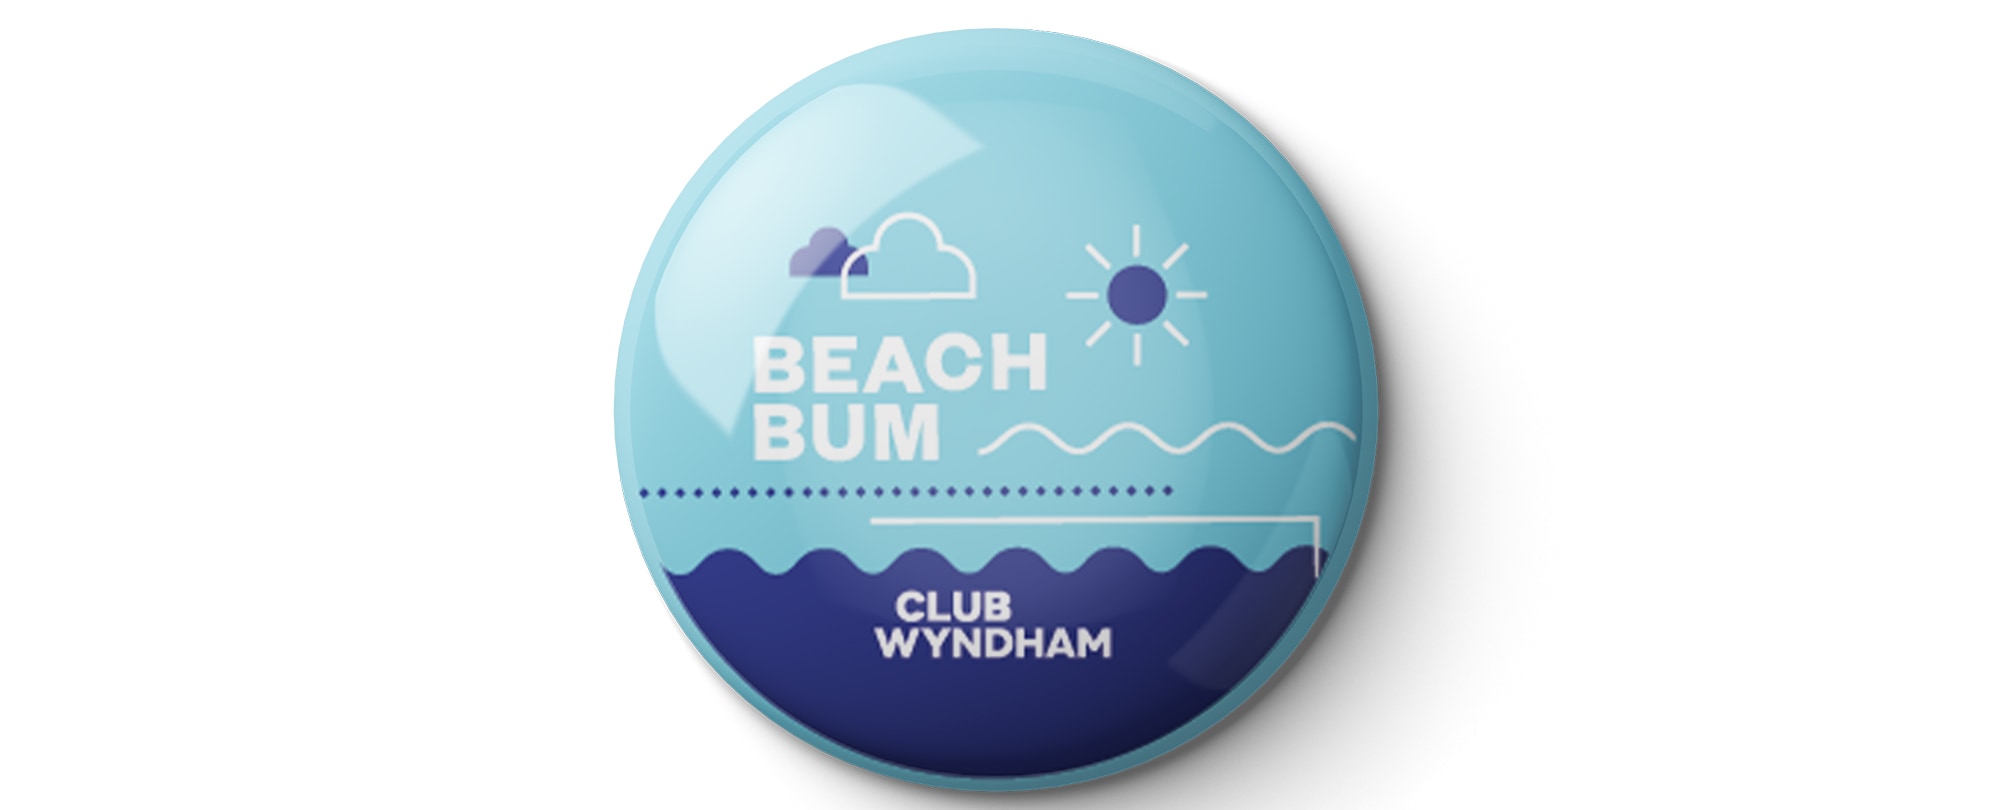 A blue "Beach Bum" Club Wyndham pin